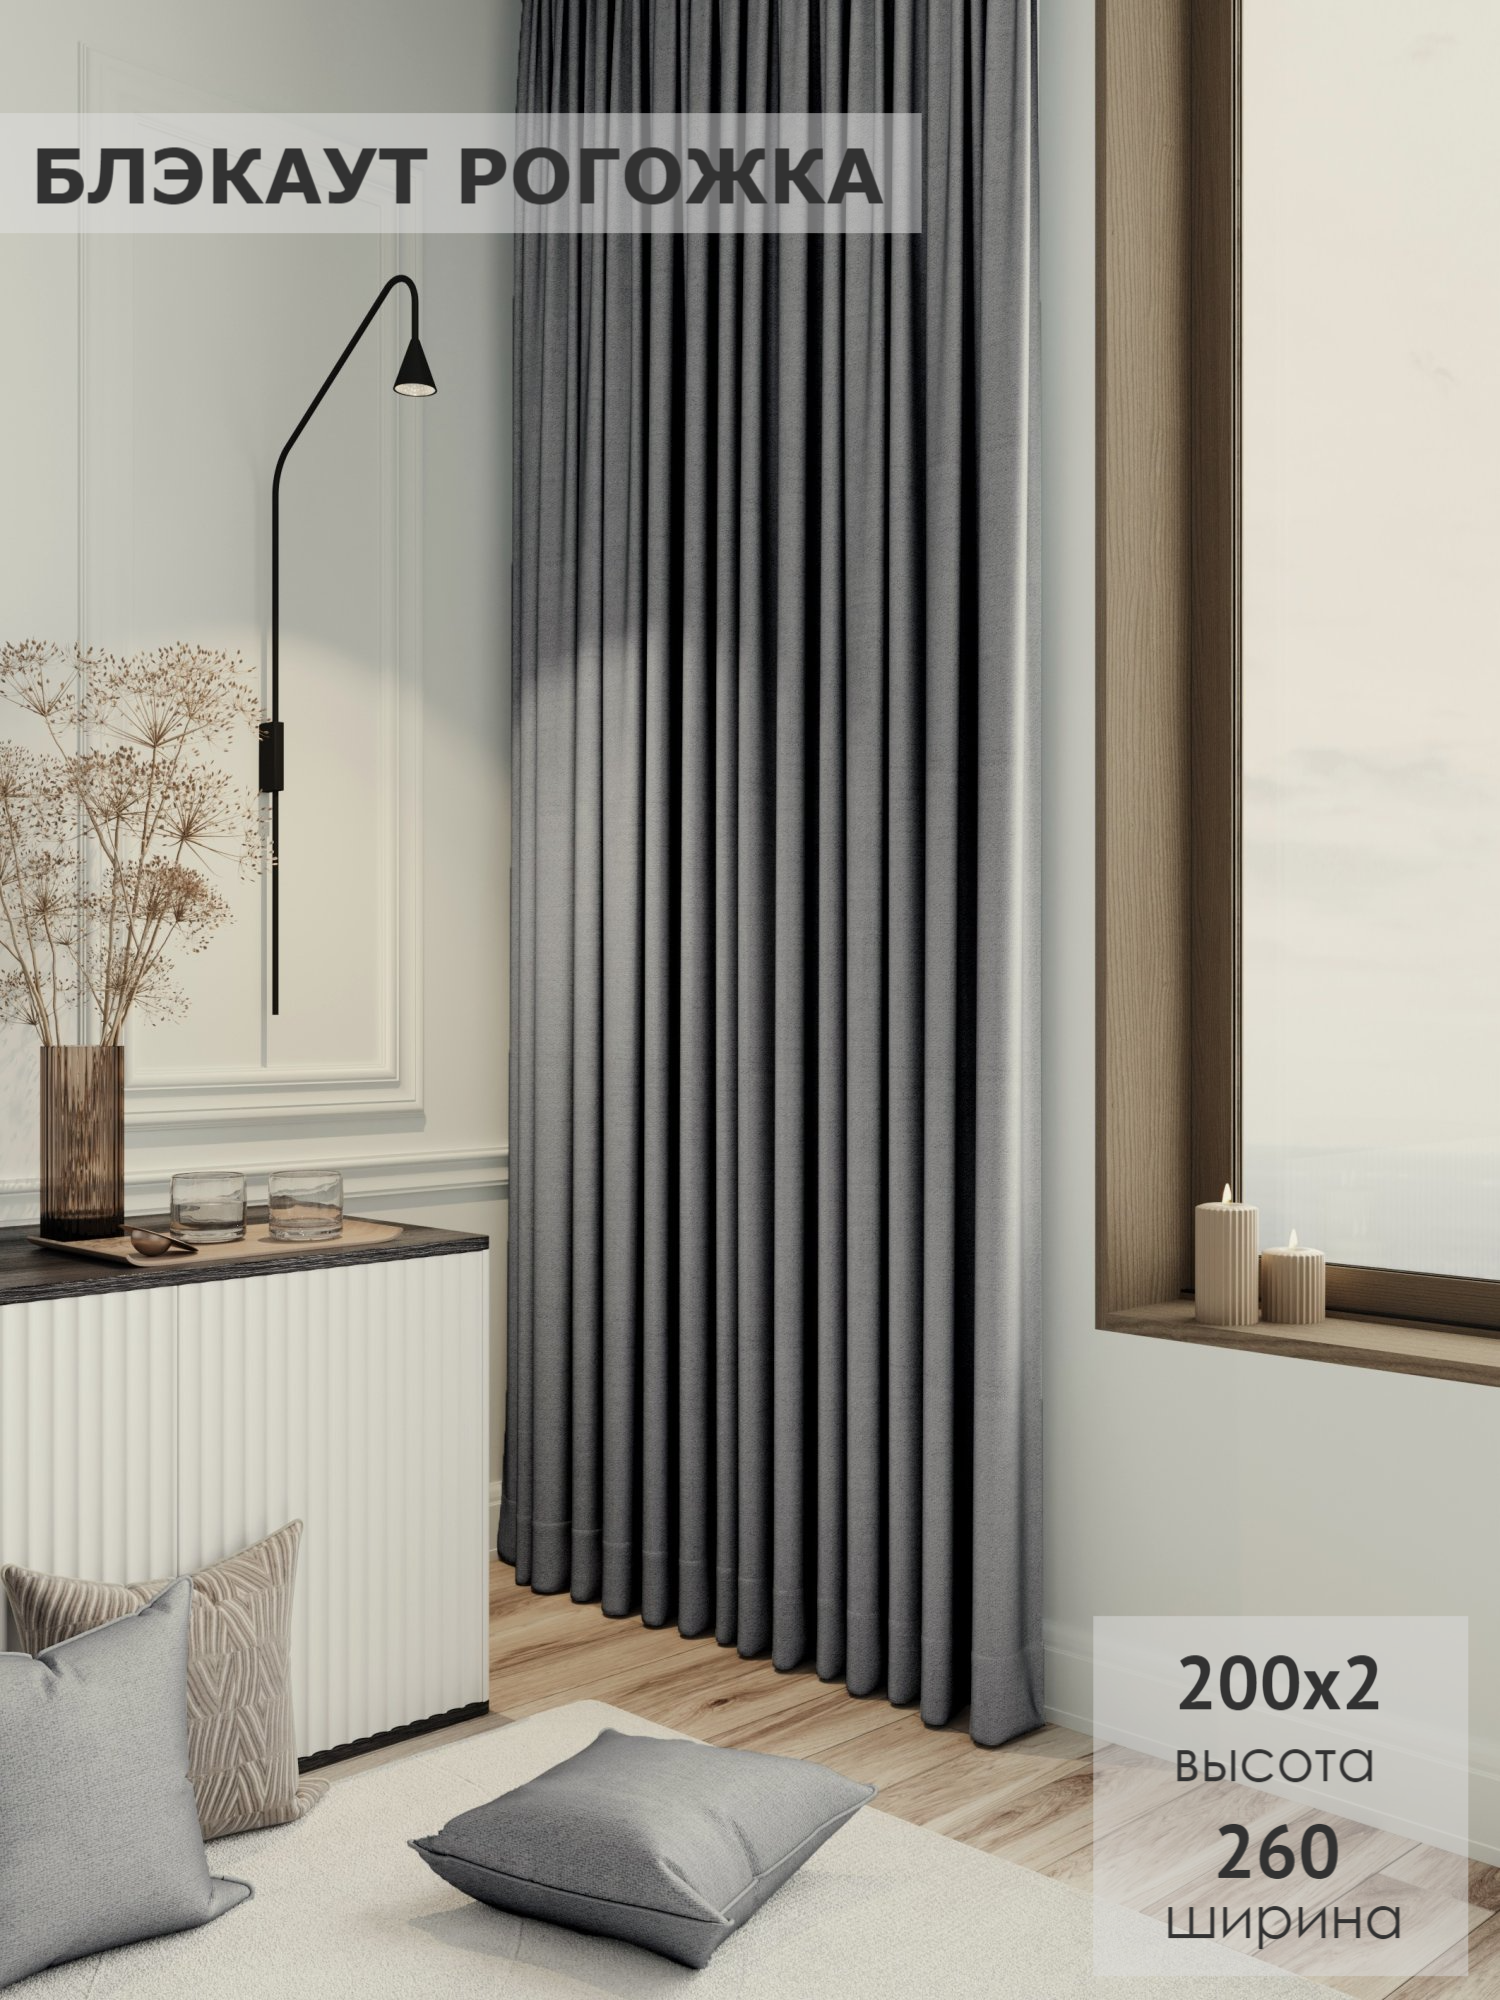 Комплект штор KS interior textile Блэкаут рогожка 200х2602шт серый